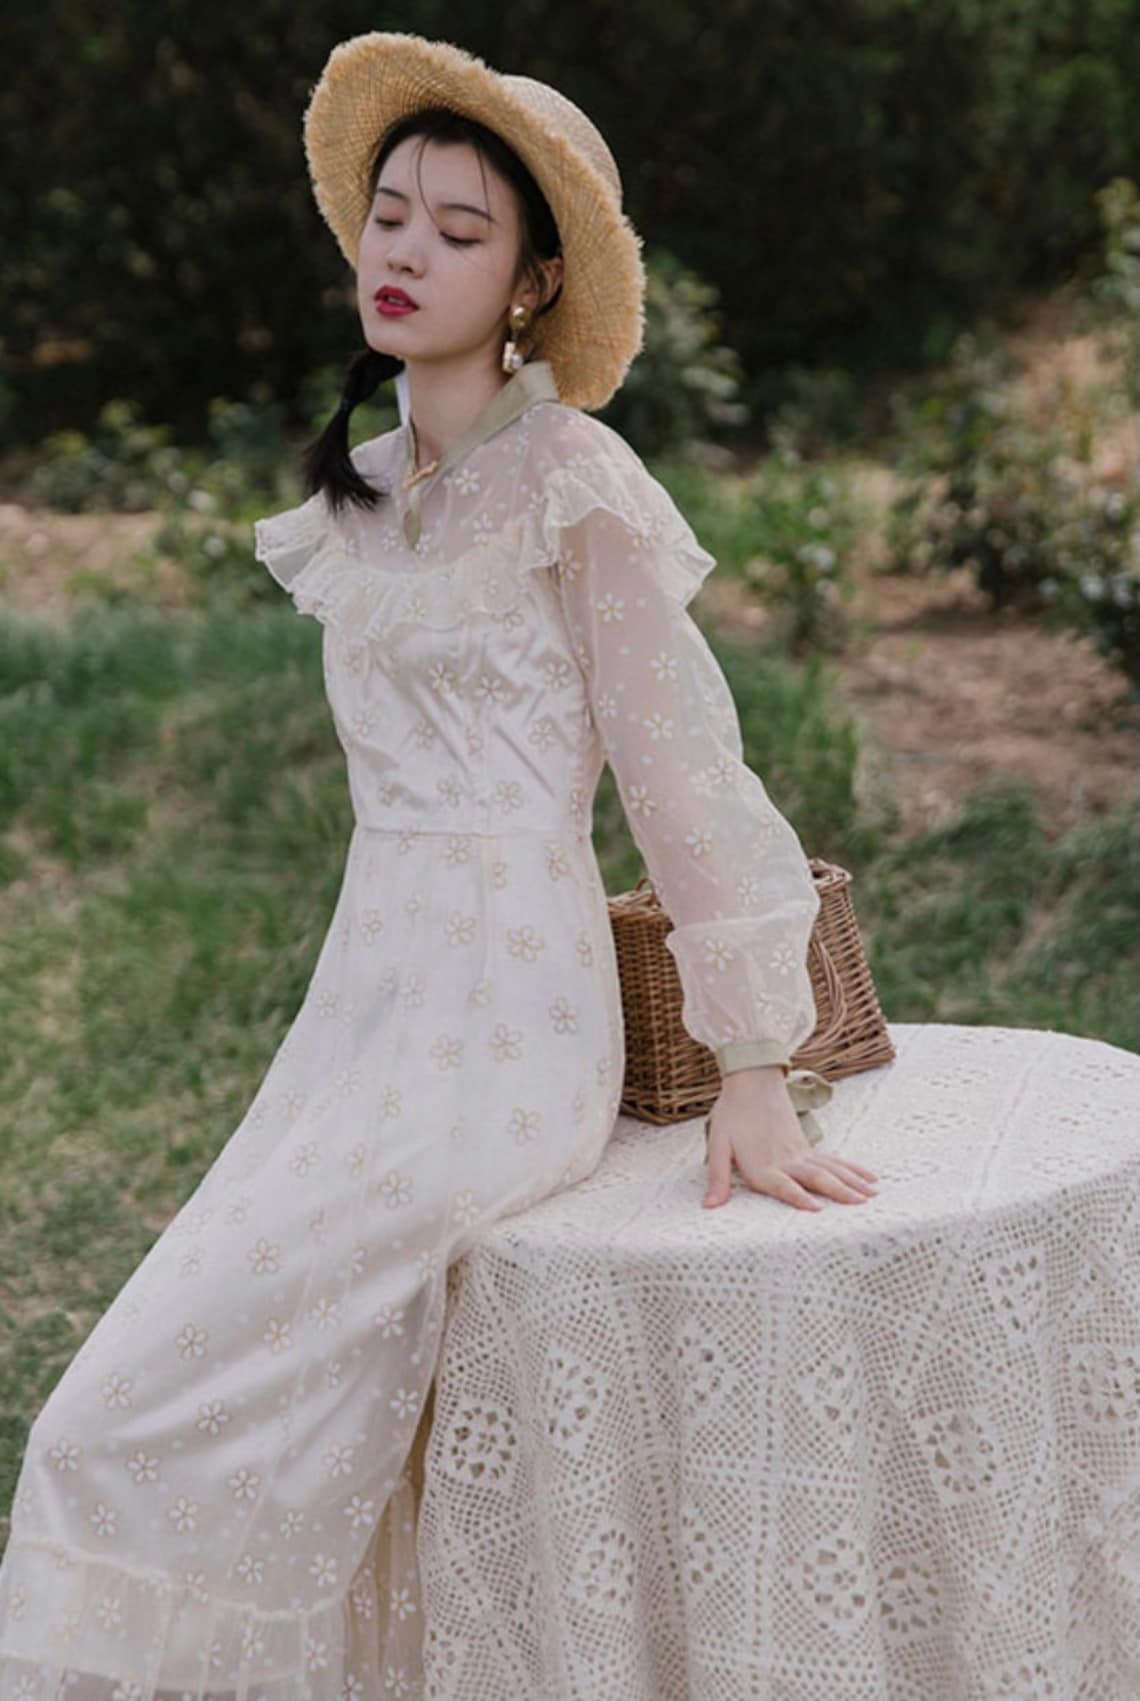 Fairy Dress-Princess Dress-Cottage Core Dress-Vintage Lace | Etsy